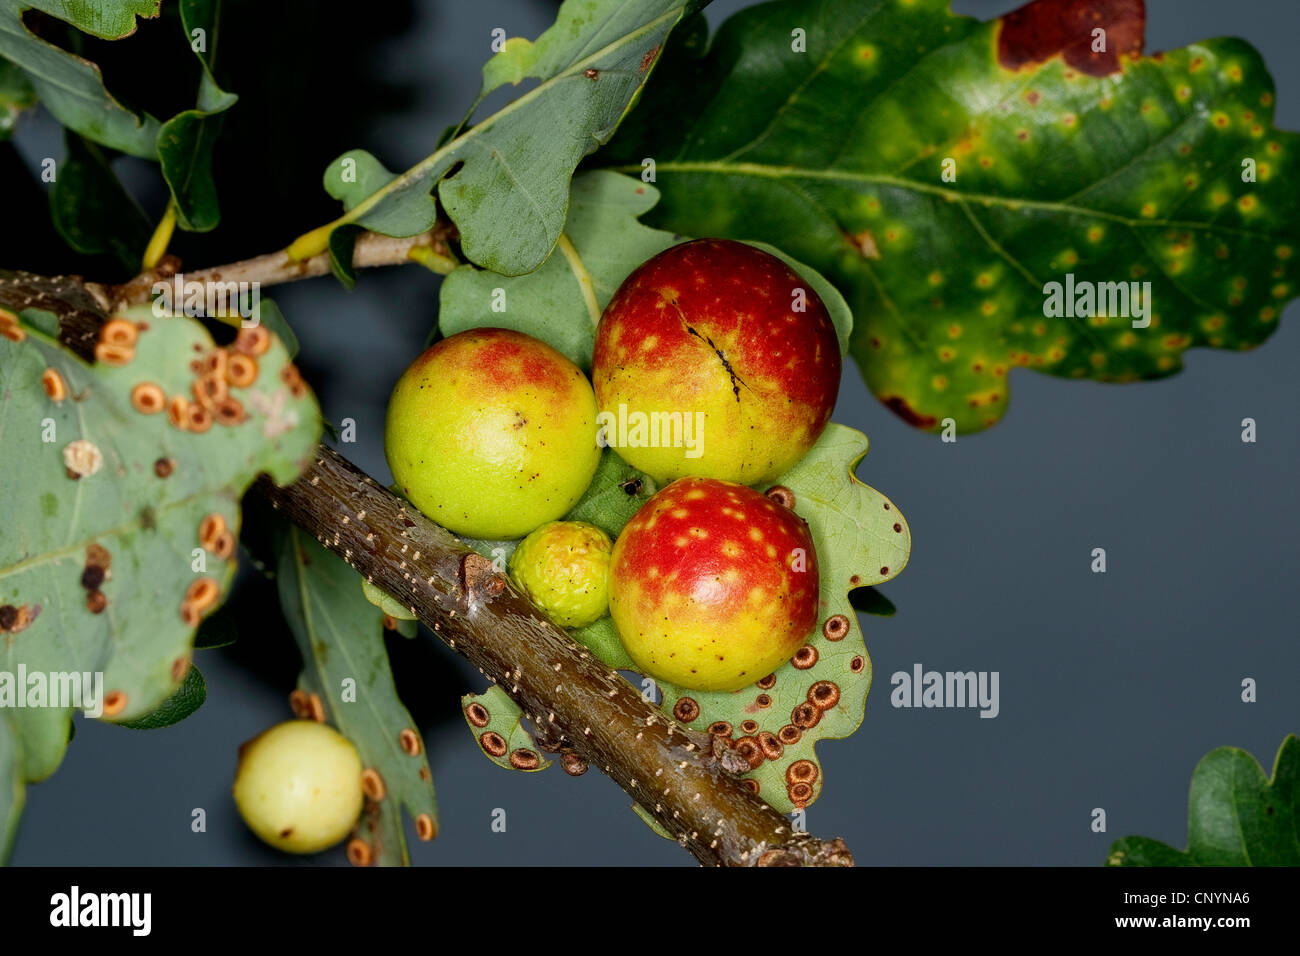 Le chêne commun gallwasp feuille de chêne, noyer, cerisier cynips galle gall (Cynips quercusfolii), les galles de chêne à la face inférieure d'une feuille de chêne, Allemagne Banque D'Images